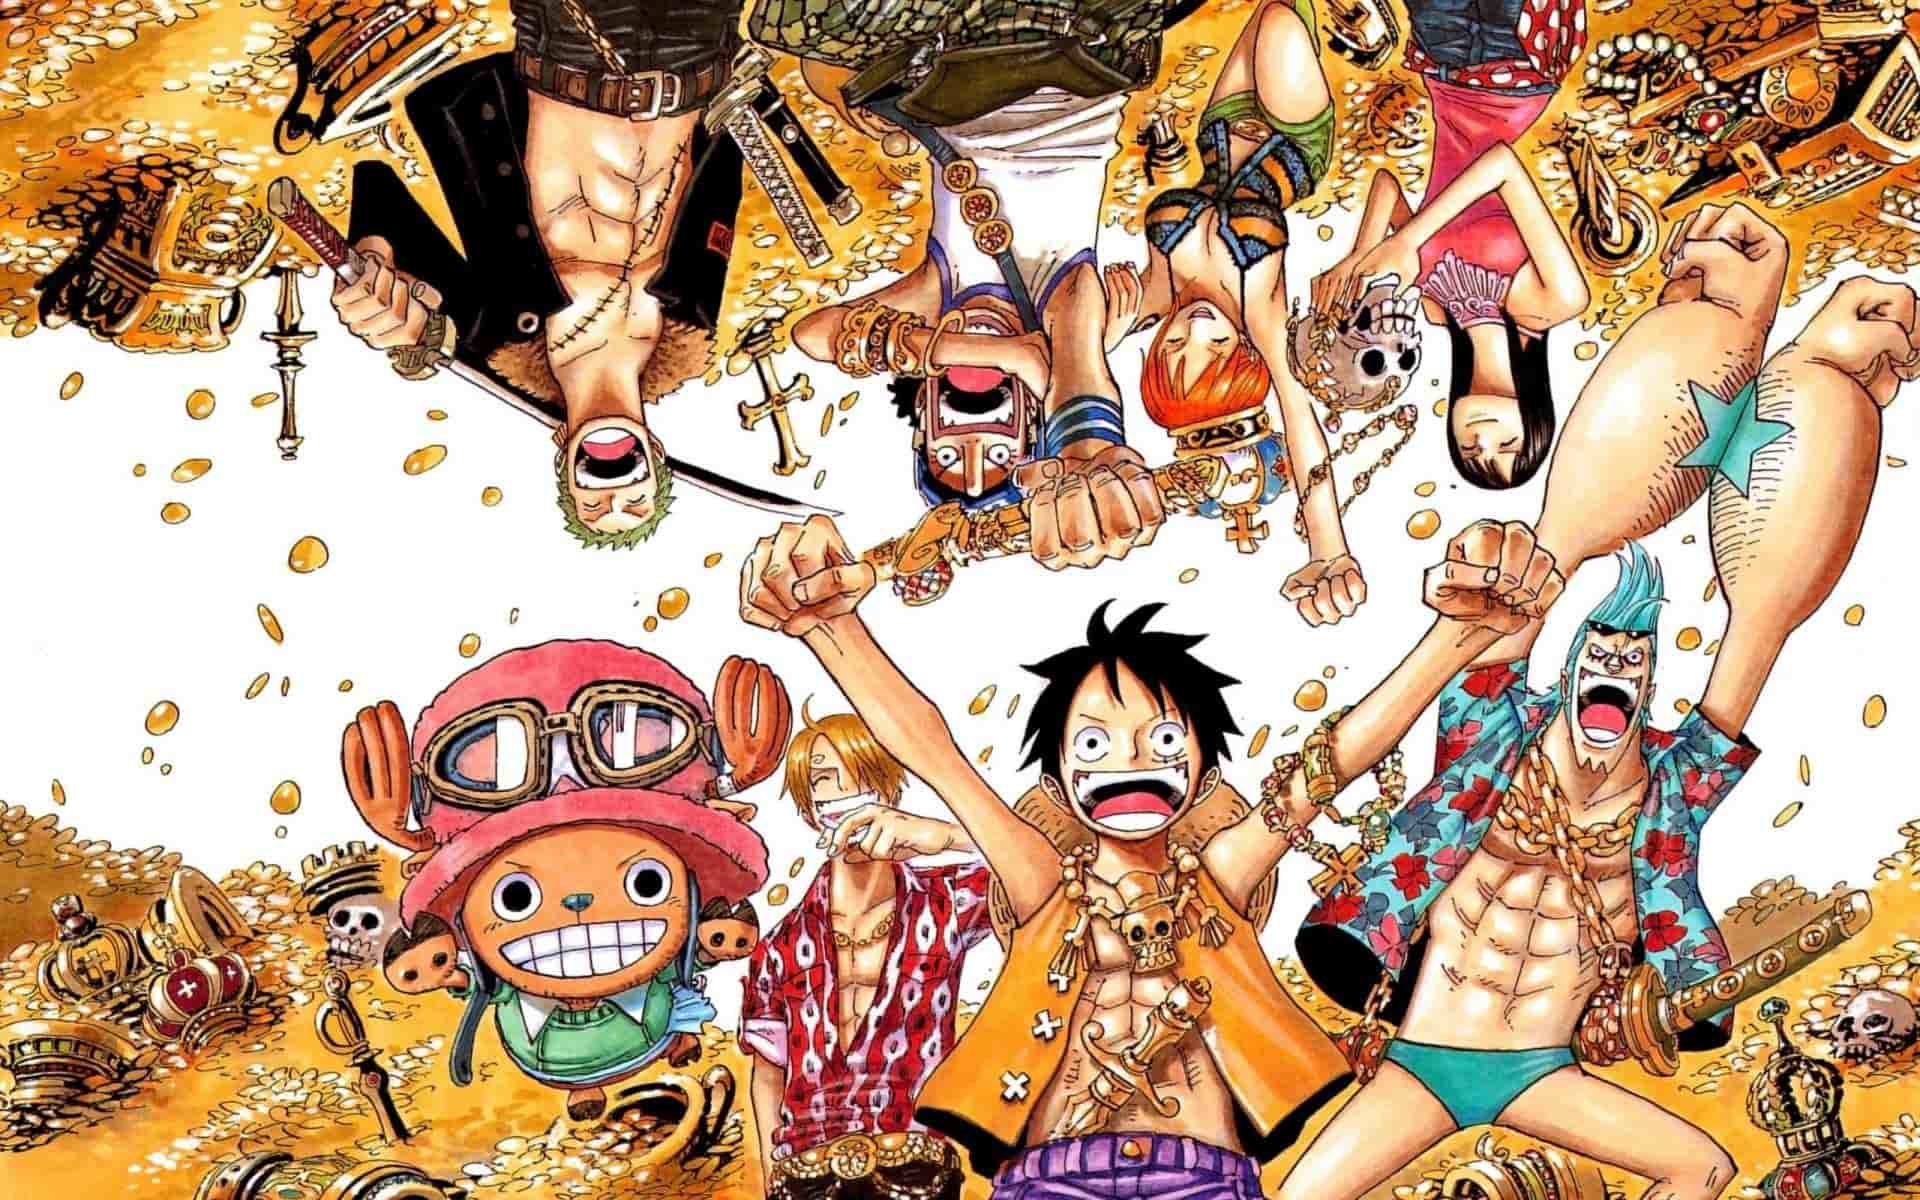 Hình Nền Máy Tính One Piece 4k Đẹp ❤️1001 Ảnh Full Hd PC